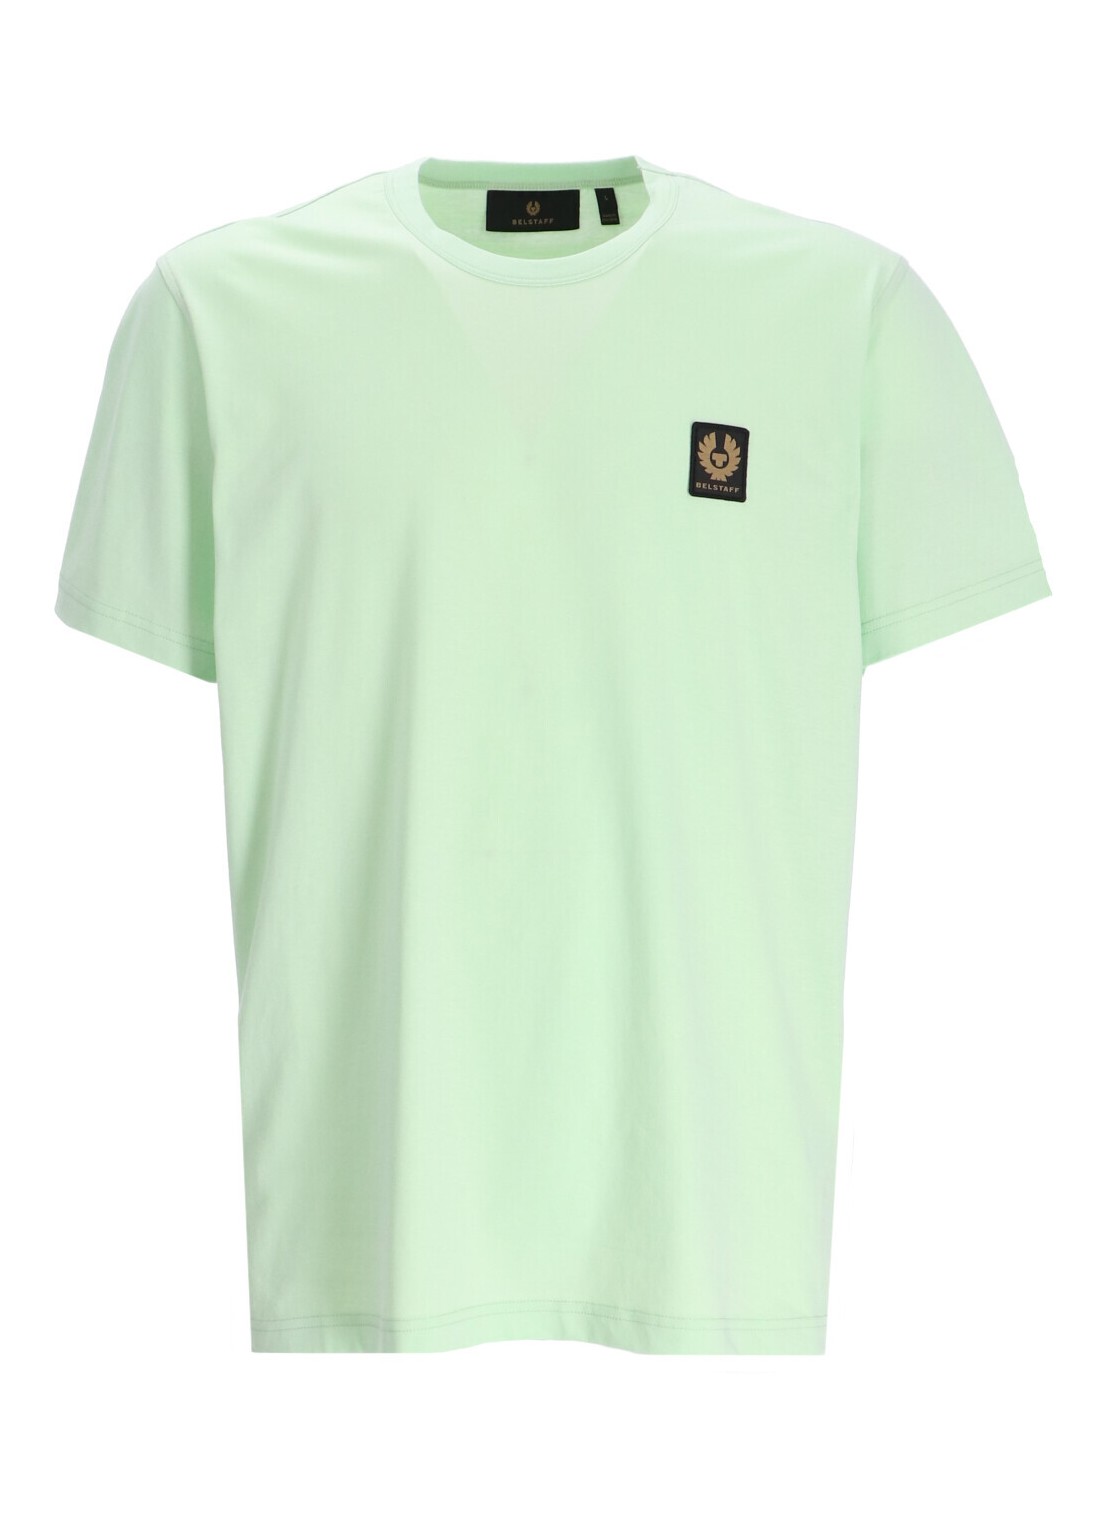 Camiseta belstaff t-shirt man belstaff t-shirt 100055 nlfgn talla verde
 